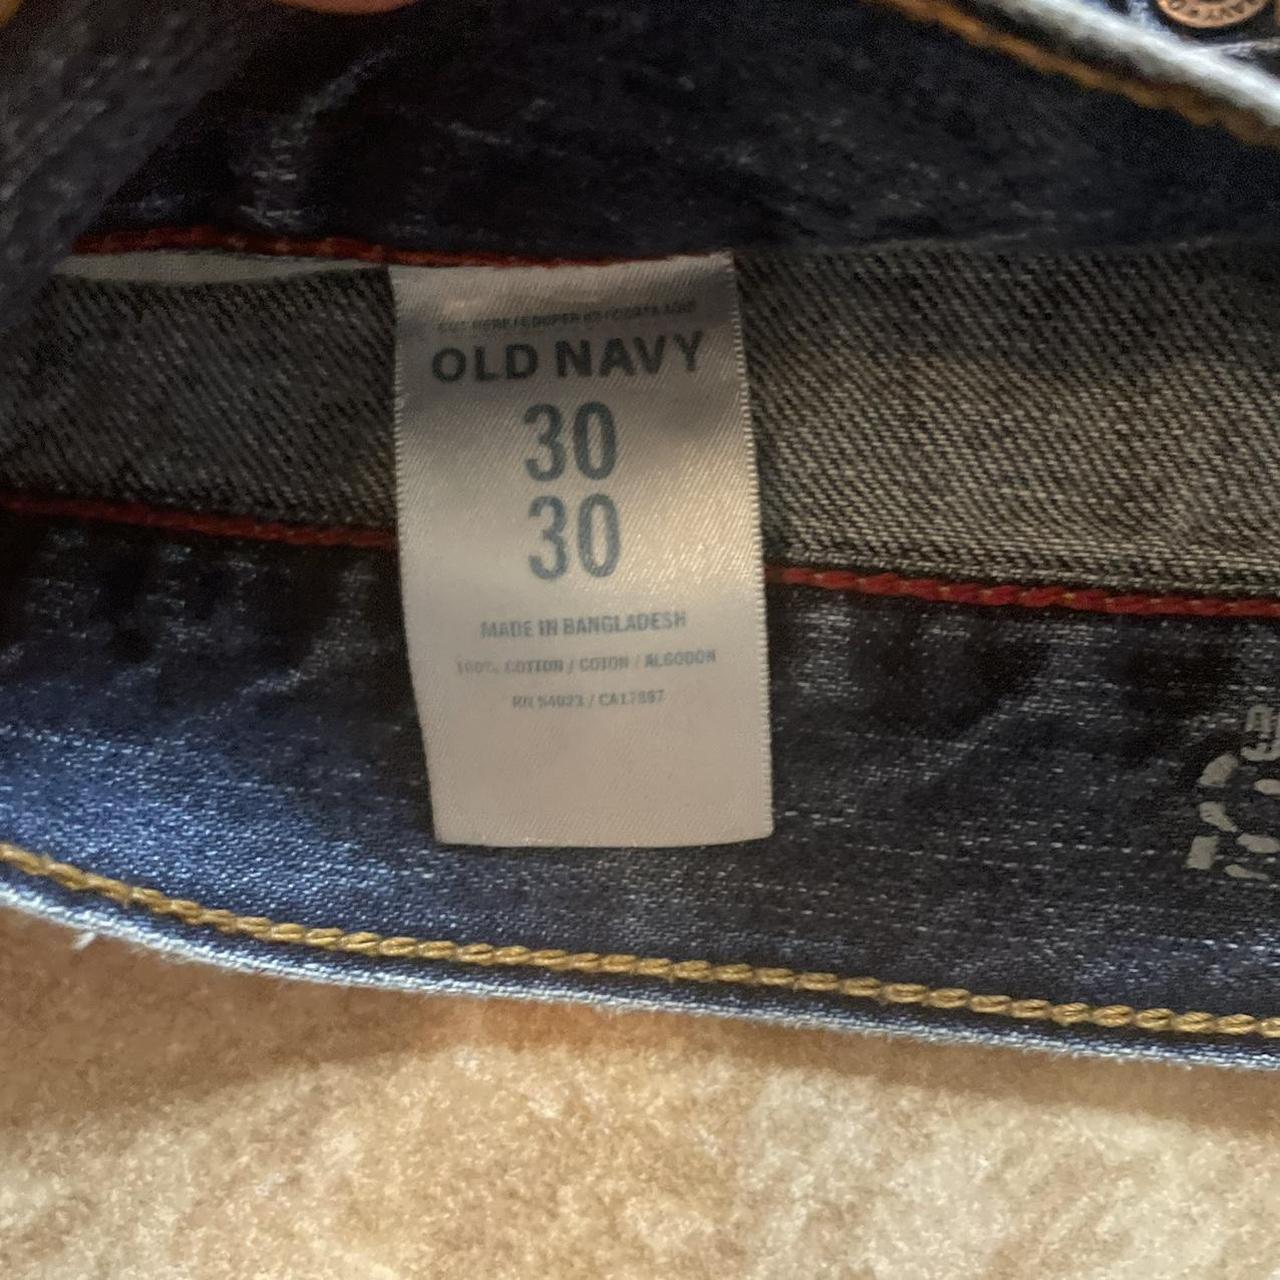 Vintage Old Navy Baggy Jeans 30x30 Looking to get... - Depop